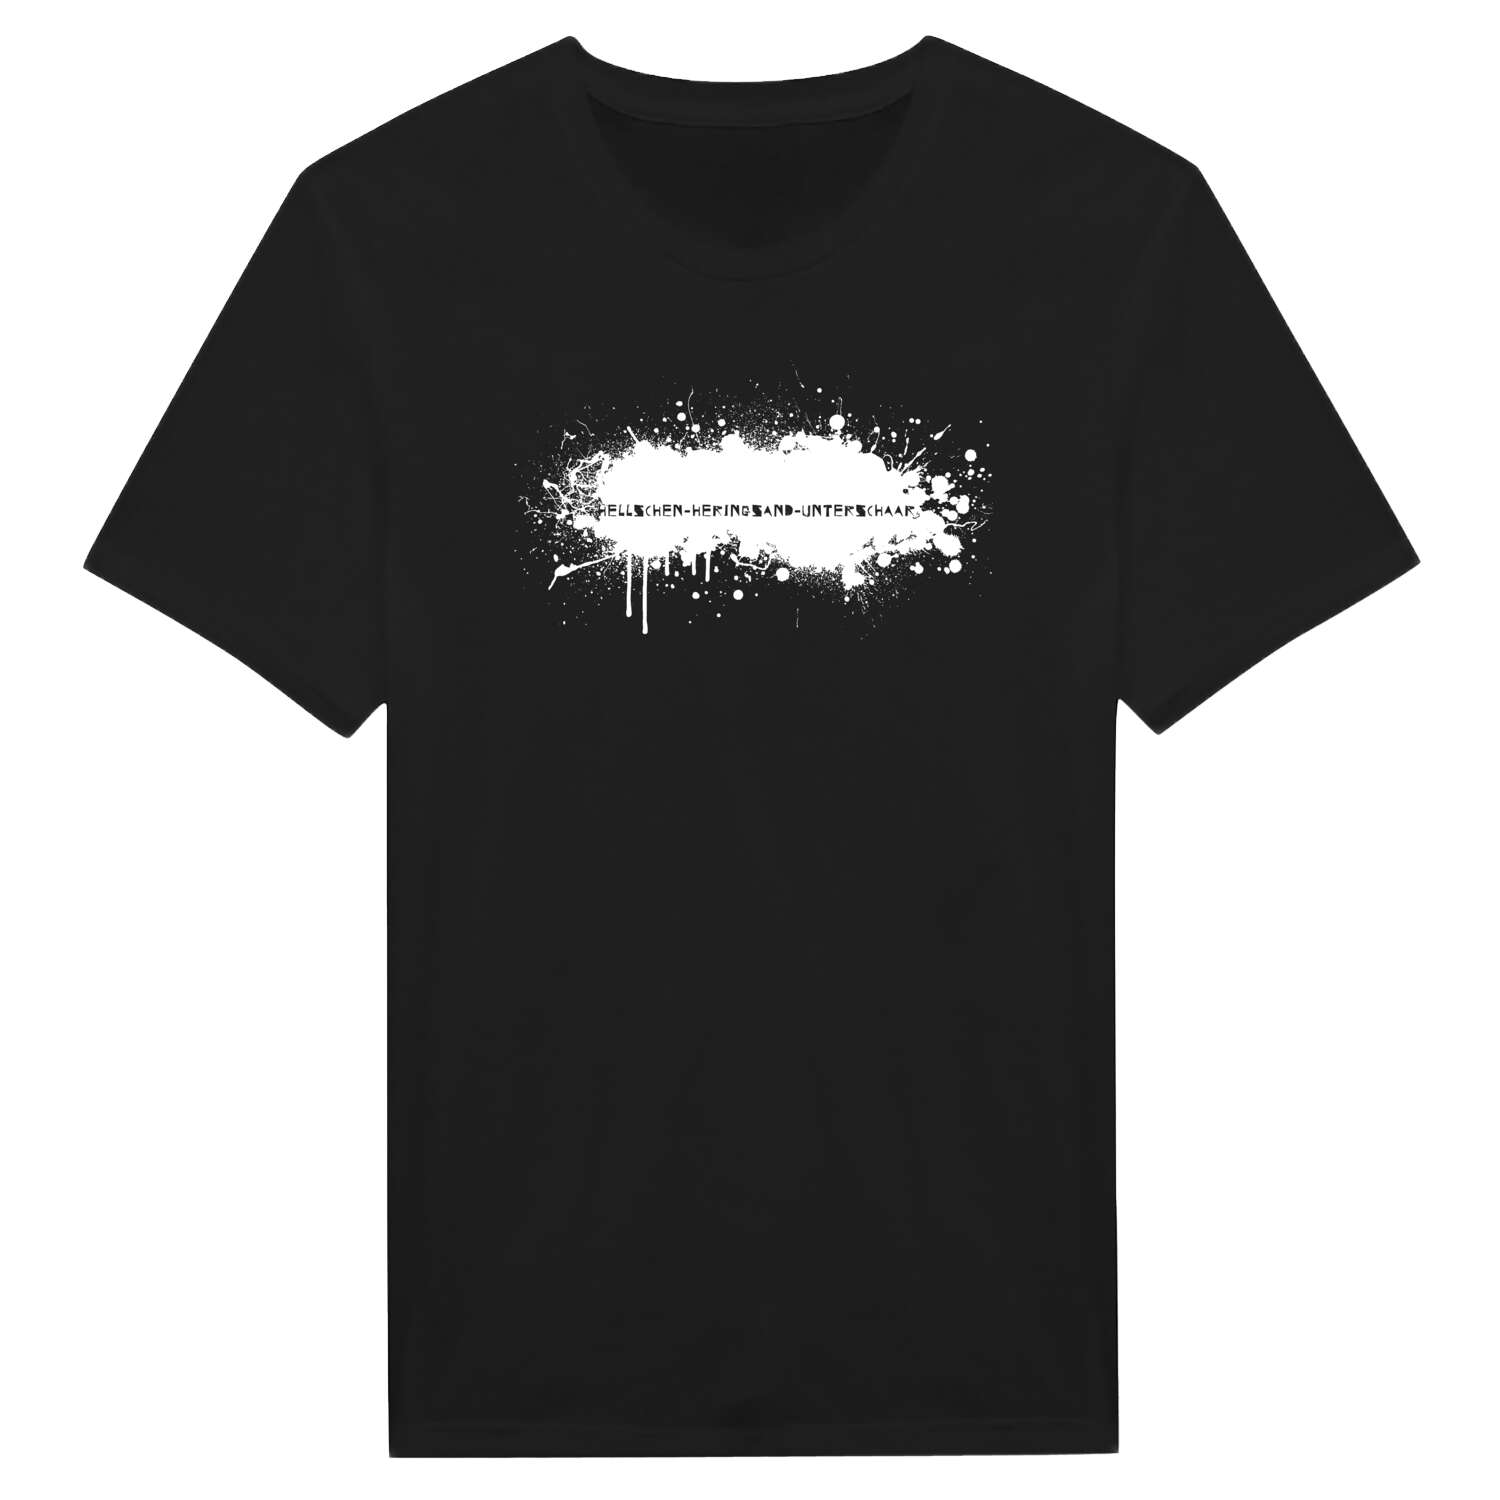 Hellschen-Heringsand-Unterschaar T-Shirt »Paint Splash Punk«